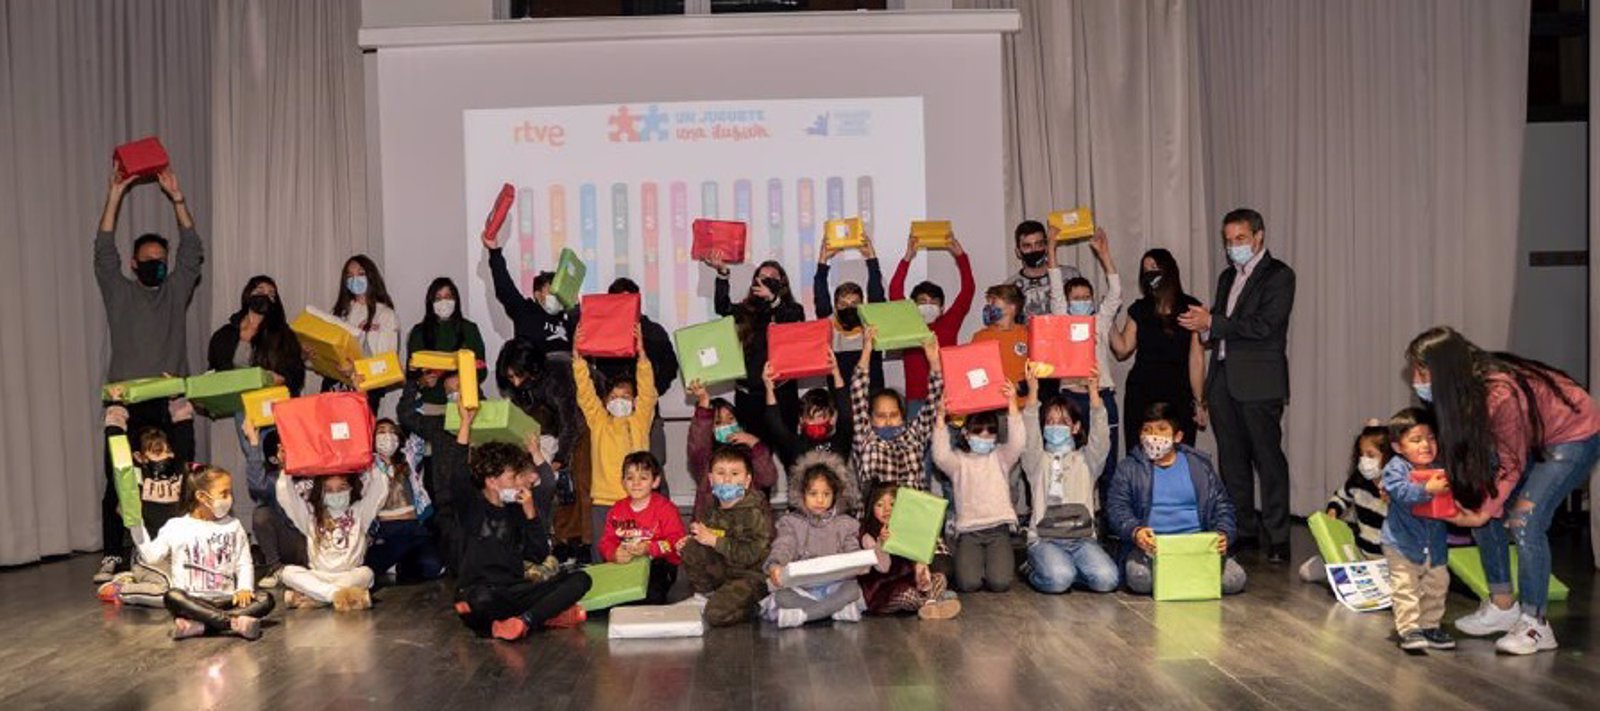 La campaña 'Un juguete, Una ilusión' entrega juguetes a 300 familias vulnerables de Madrid